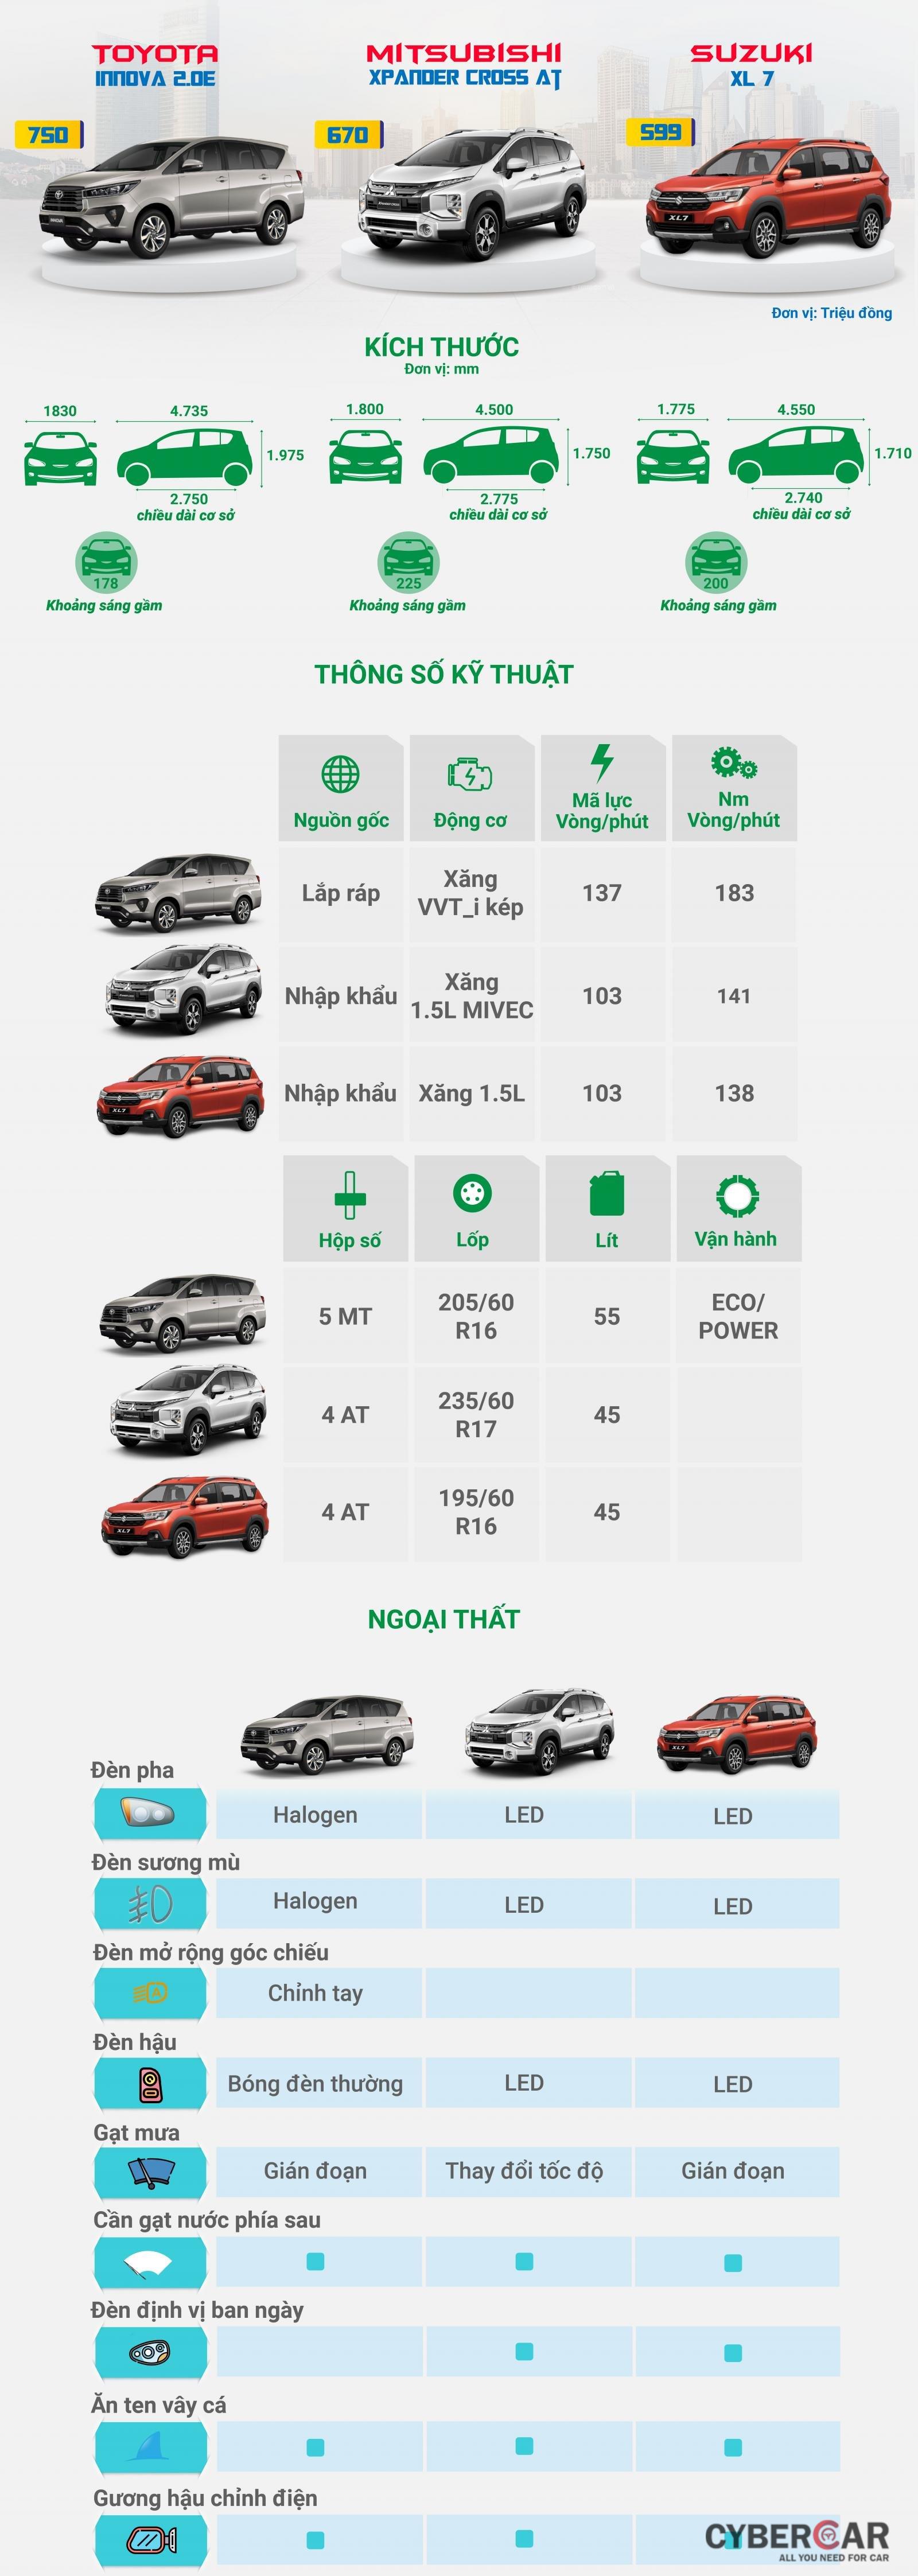 [Infographic] So sánh trang bị của 3 mẫu xe chuyên chạy dịch vụ tại Việt Nam a1